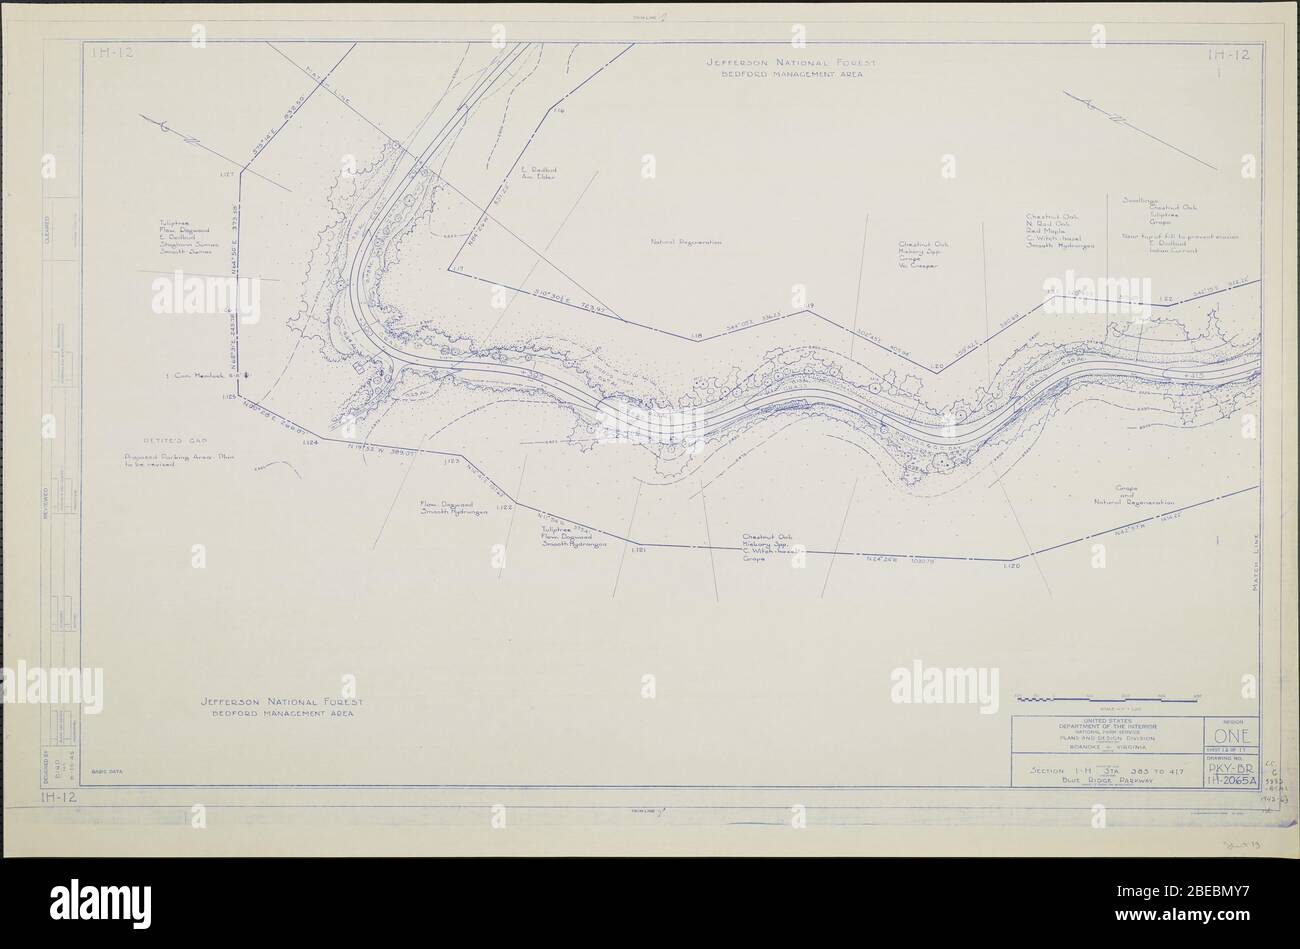 'Blue Ridge Parkway, Region 1 Blatt 12; EINE Karte des Blue Ridge Parkway mit Details über die nahe gelegenen Bäume, Sträucher und Sämlinge. Enthält Petite's Gap. Zeichnung Nr. 1H-12. Skala 1=100.; Datum Juni 19445 QS:P571,+1945-06-00T00:00:00Z/10; ' Stockfoto